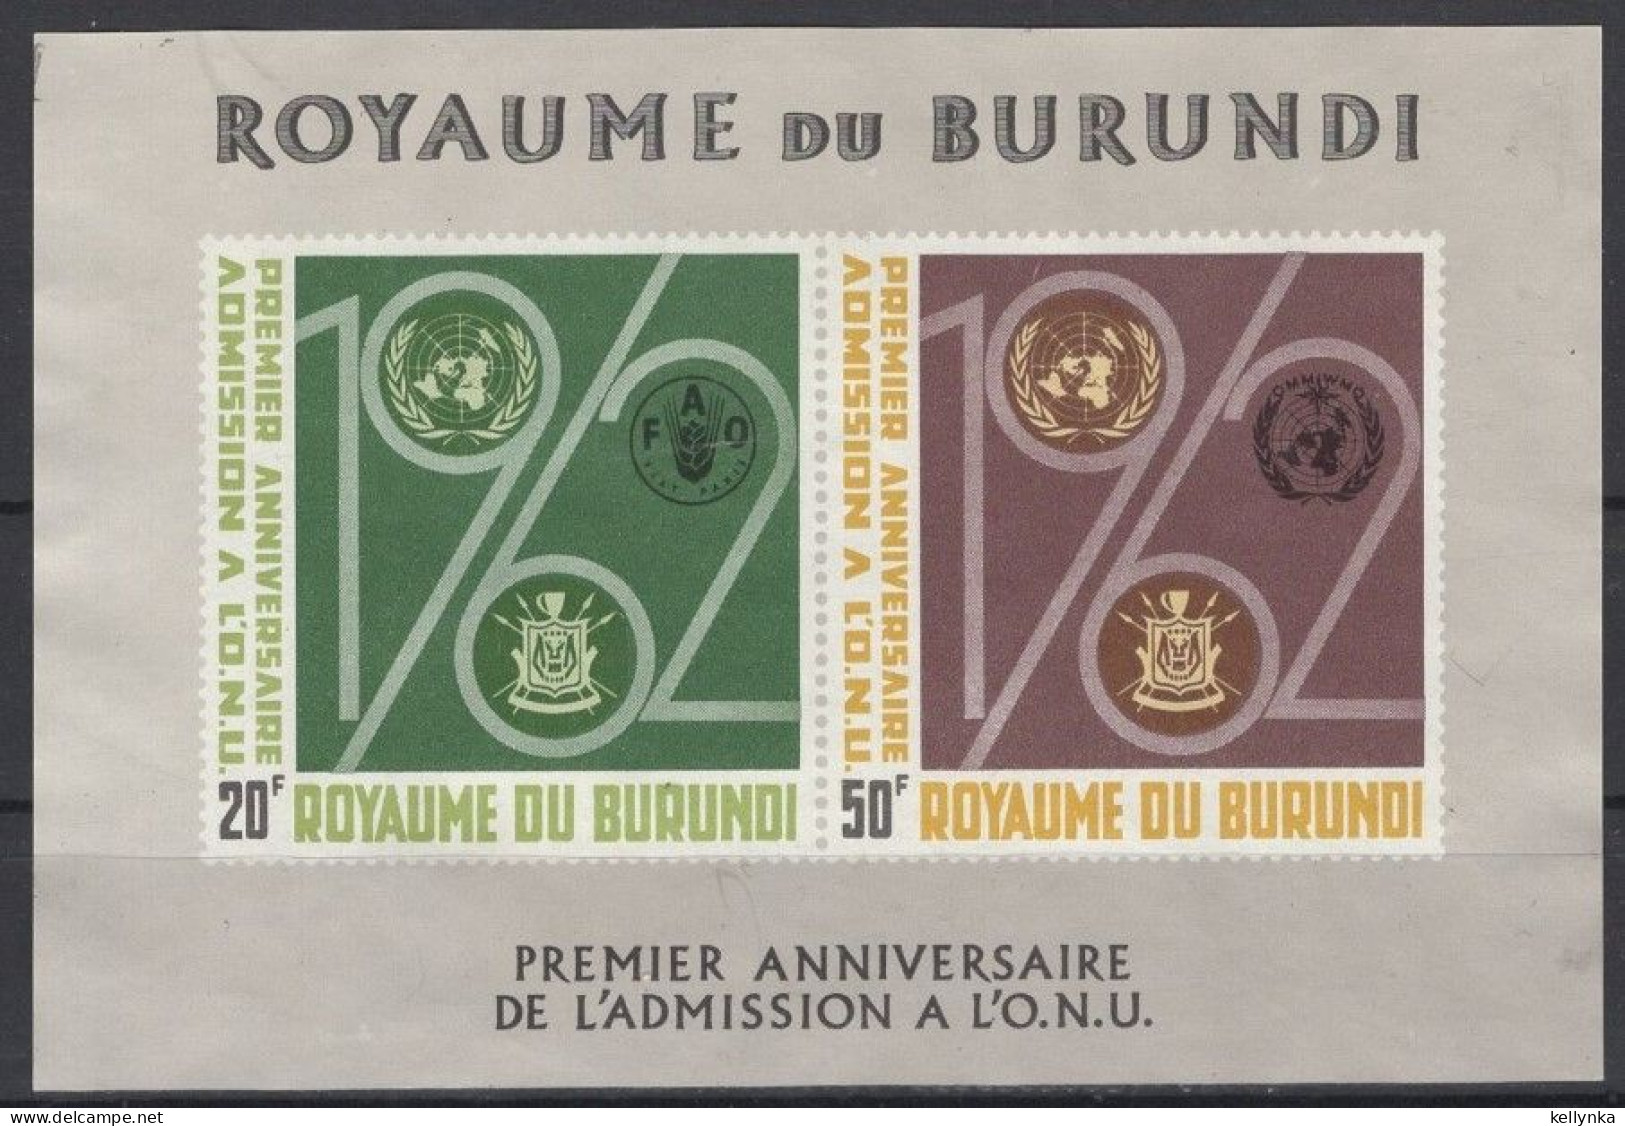 Burundi - BL2 - ONU - 1963 - MNH - Ongebruikt